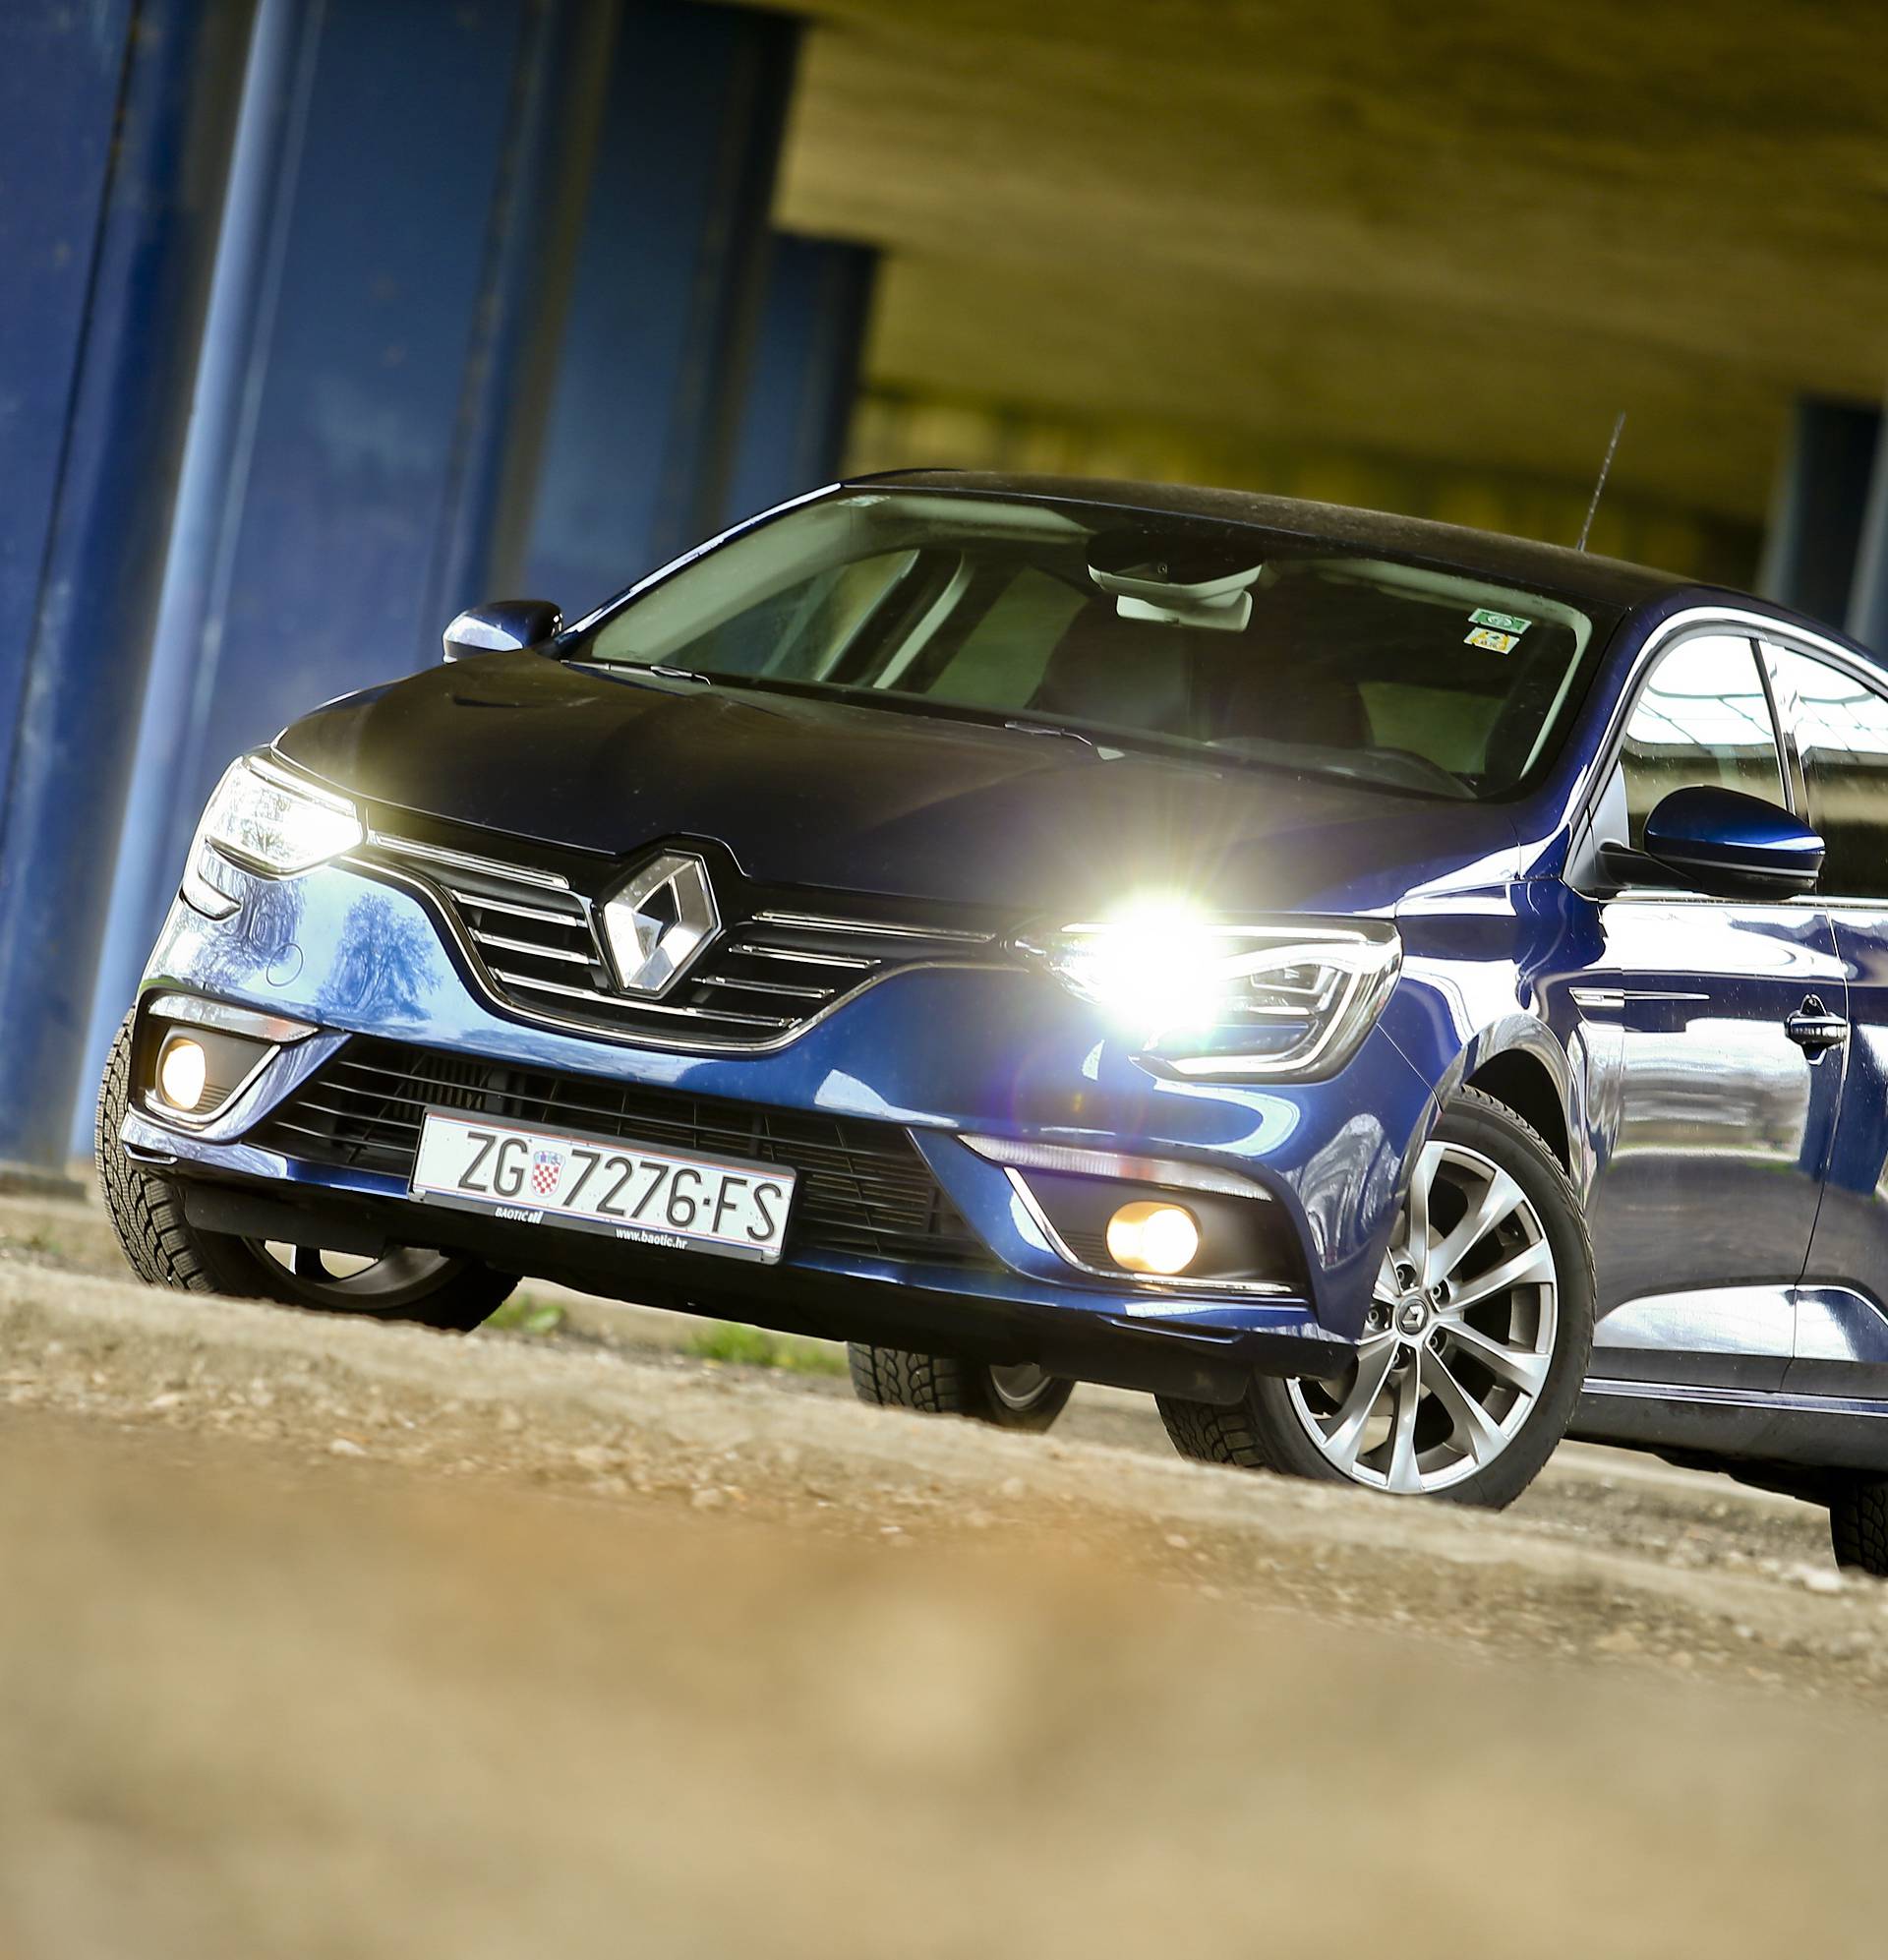 Stigao je novi Renault Megane: Vrlo štedljiv, moderan i udoban